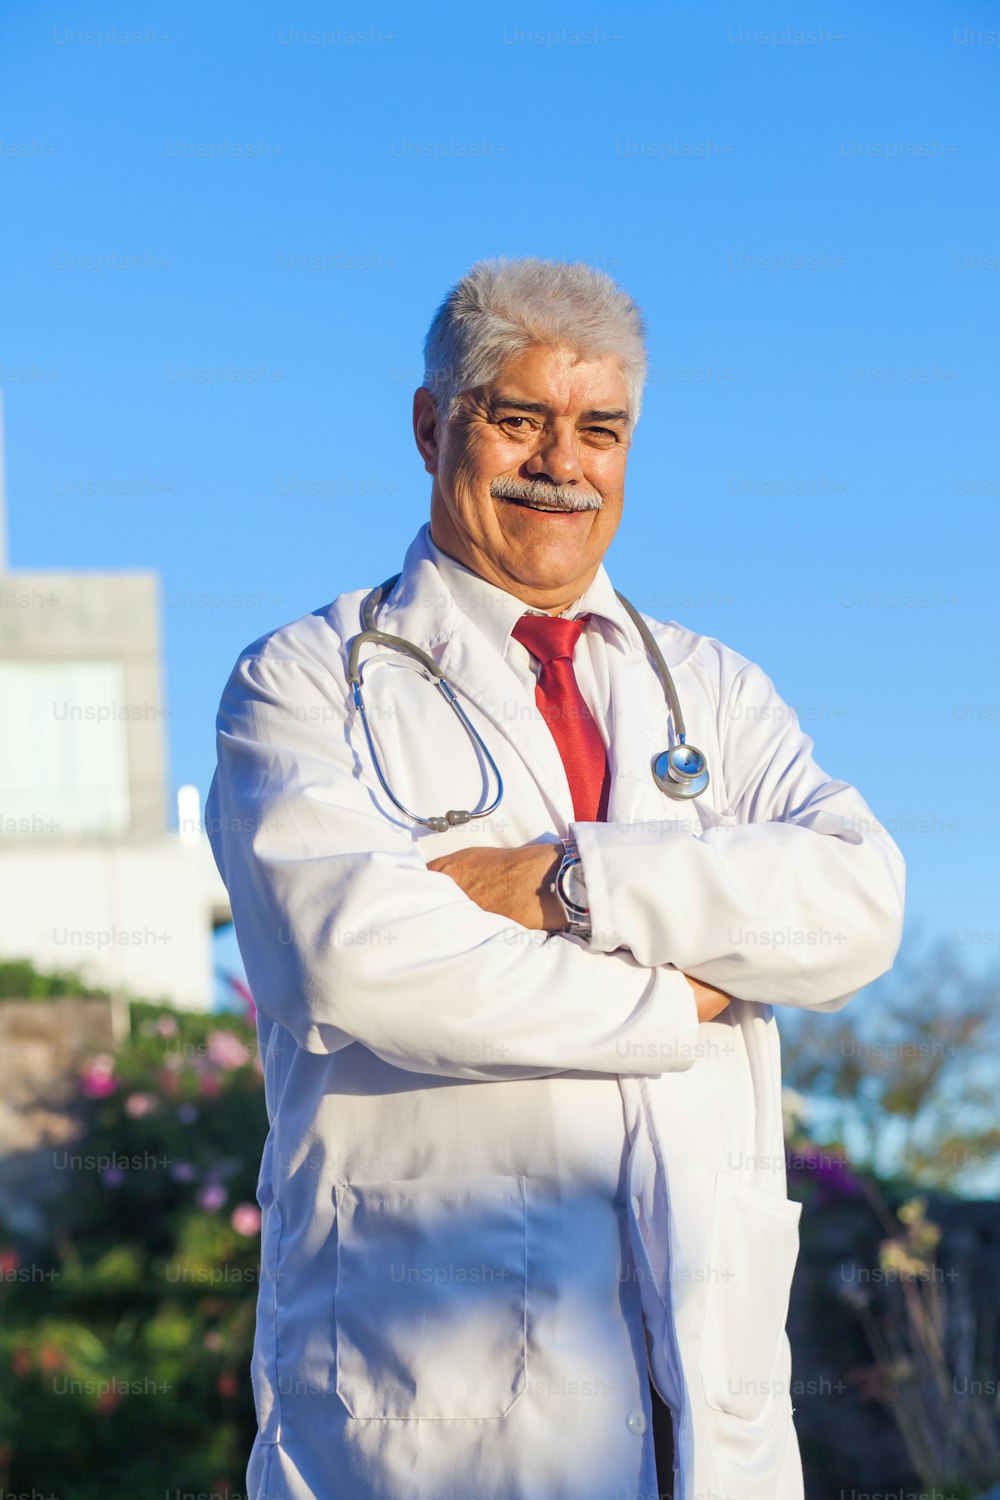 Lateinamerikanischer Oberarzt in einem mexikanischen Krankenhaus in Mexiko-Stadt oder Lateinamerika